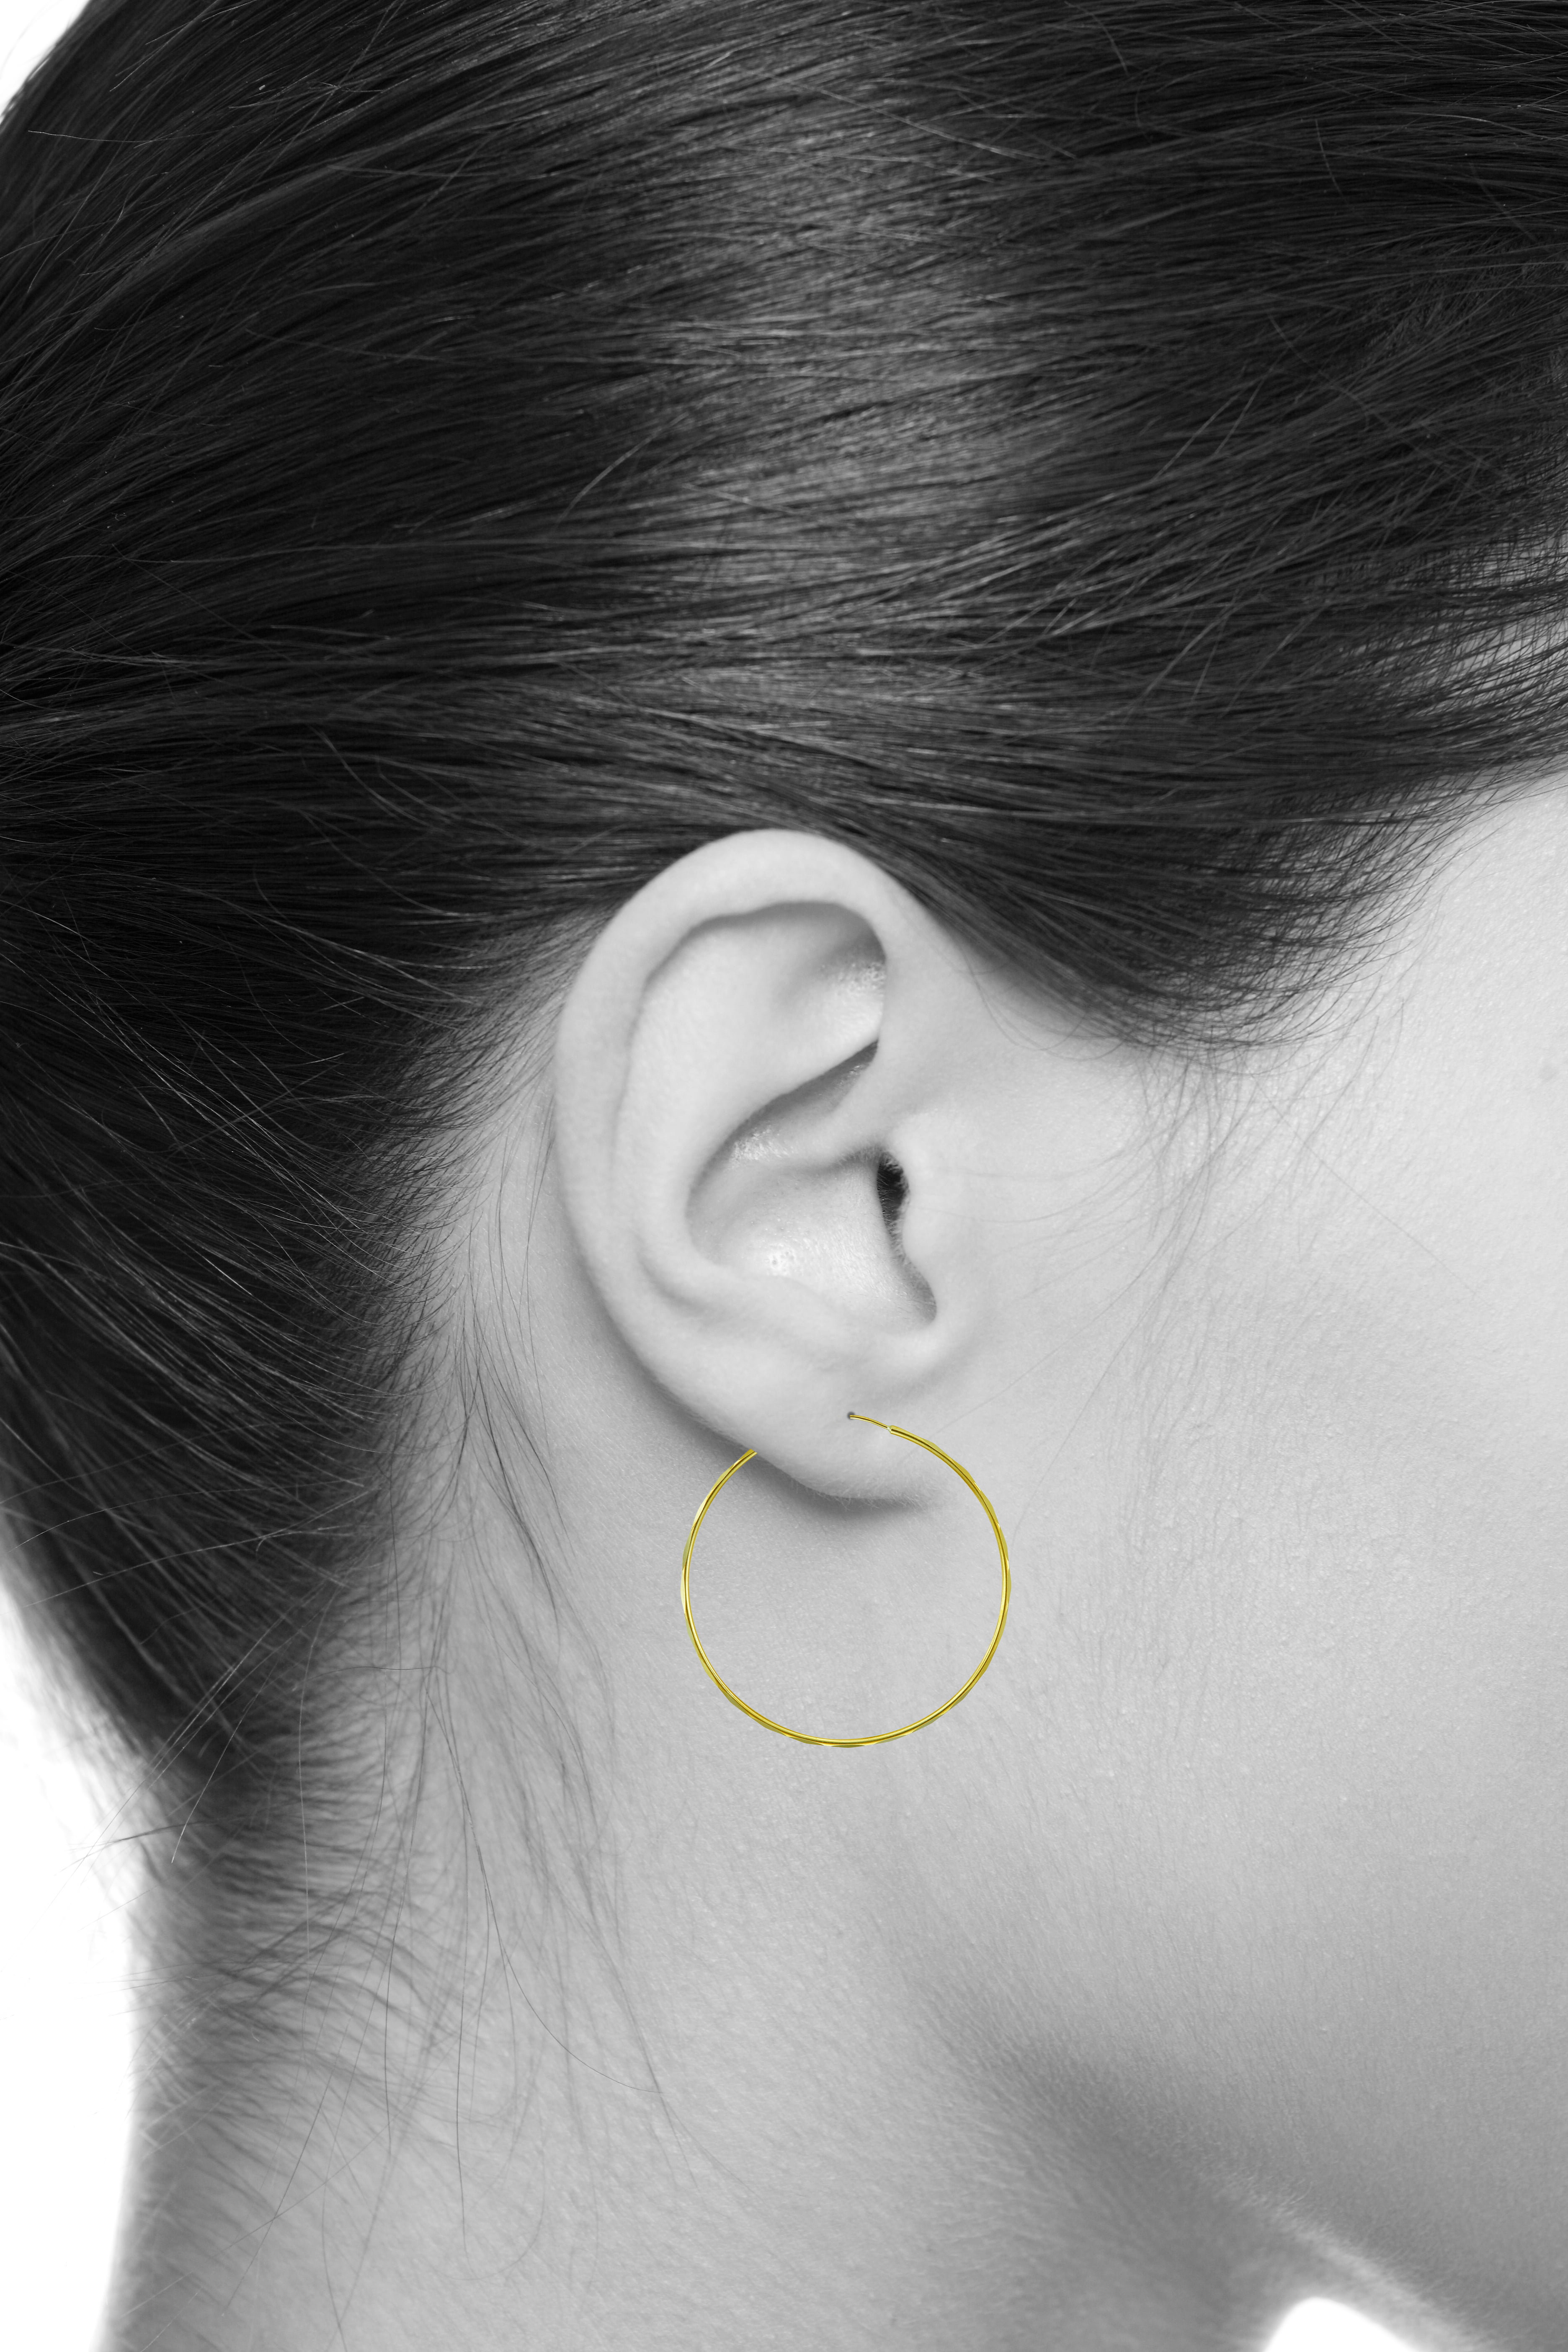 Wellingsale Ladies 14k Yellow Gold Polished 14.5mm Channel Set CZ Hoop Earrings 14.5 x 14.5 mm